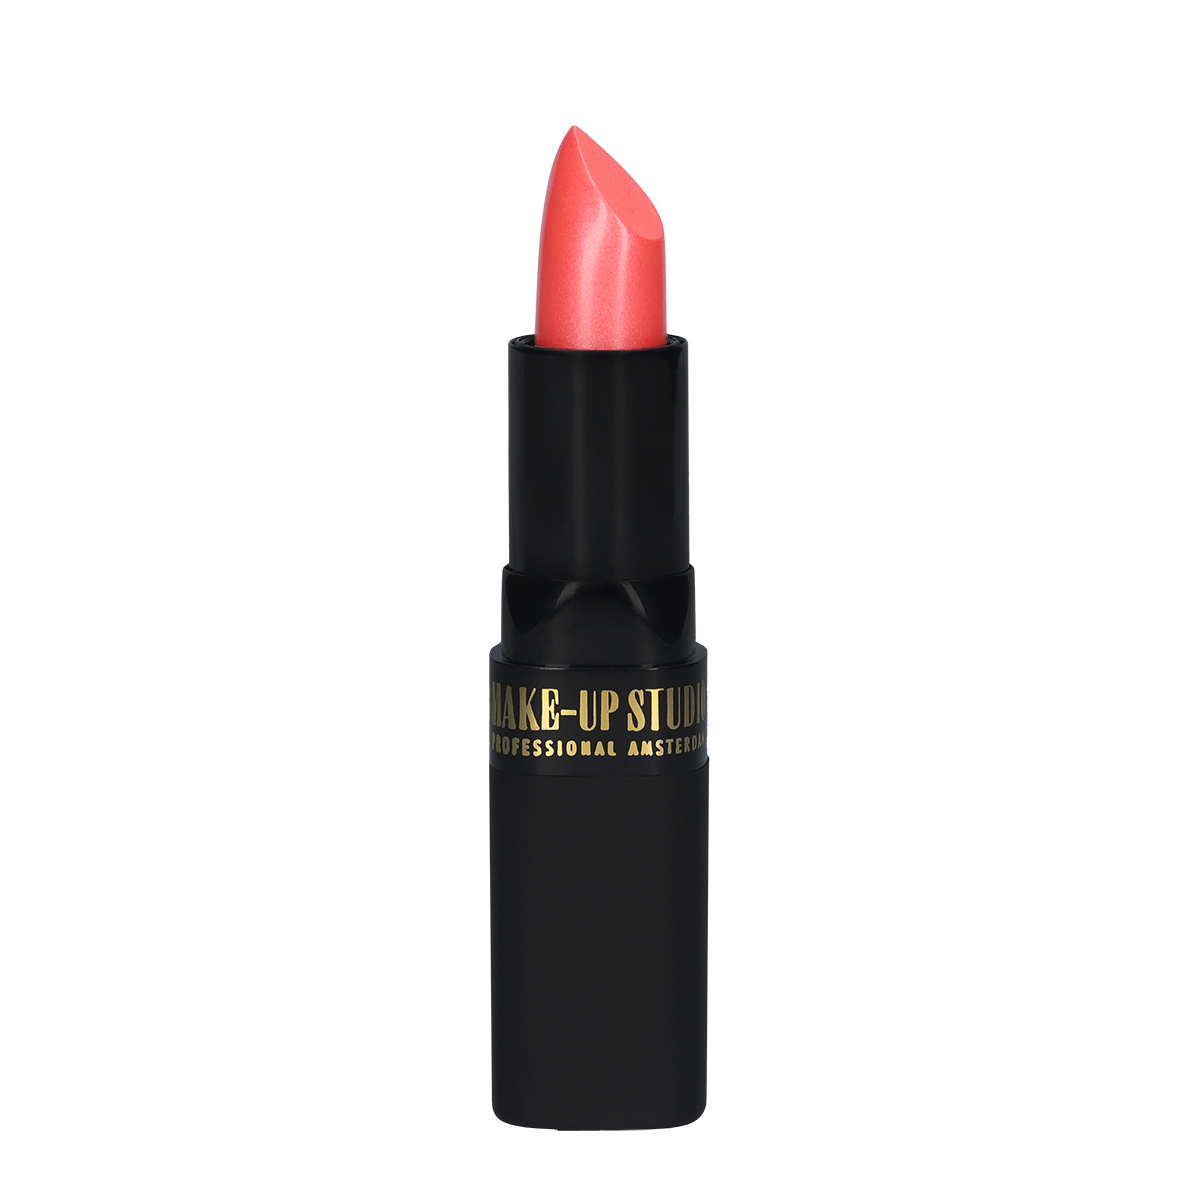 Make-up Studio Lipstick Lippenstift - 28